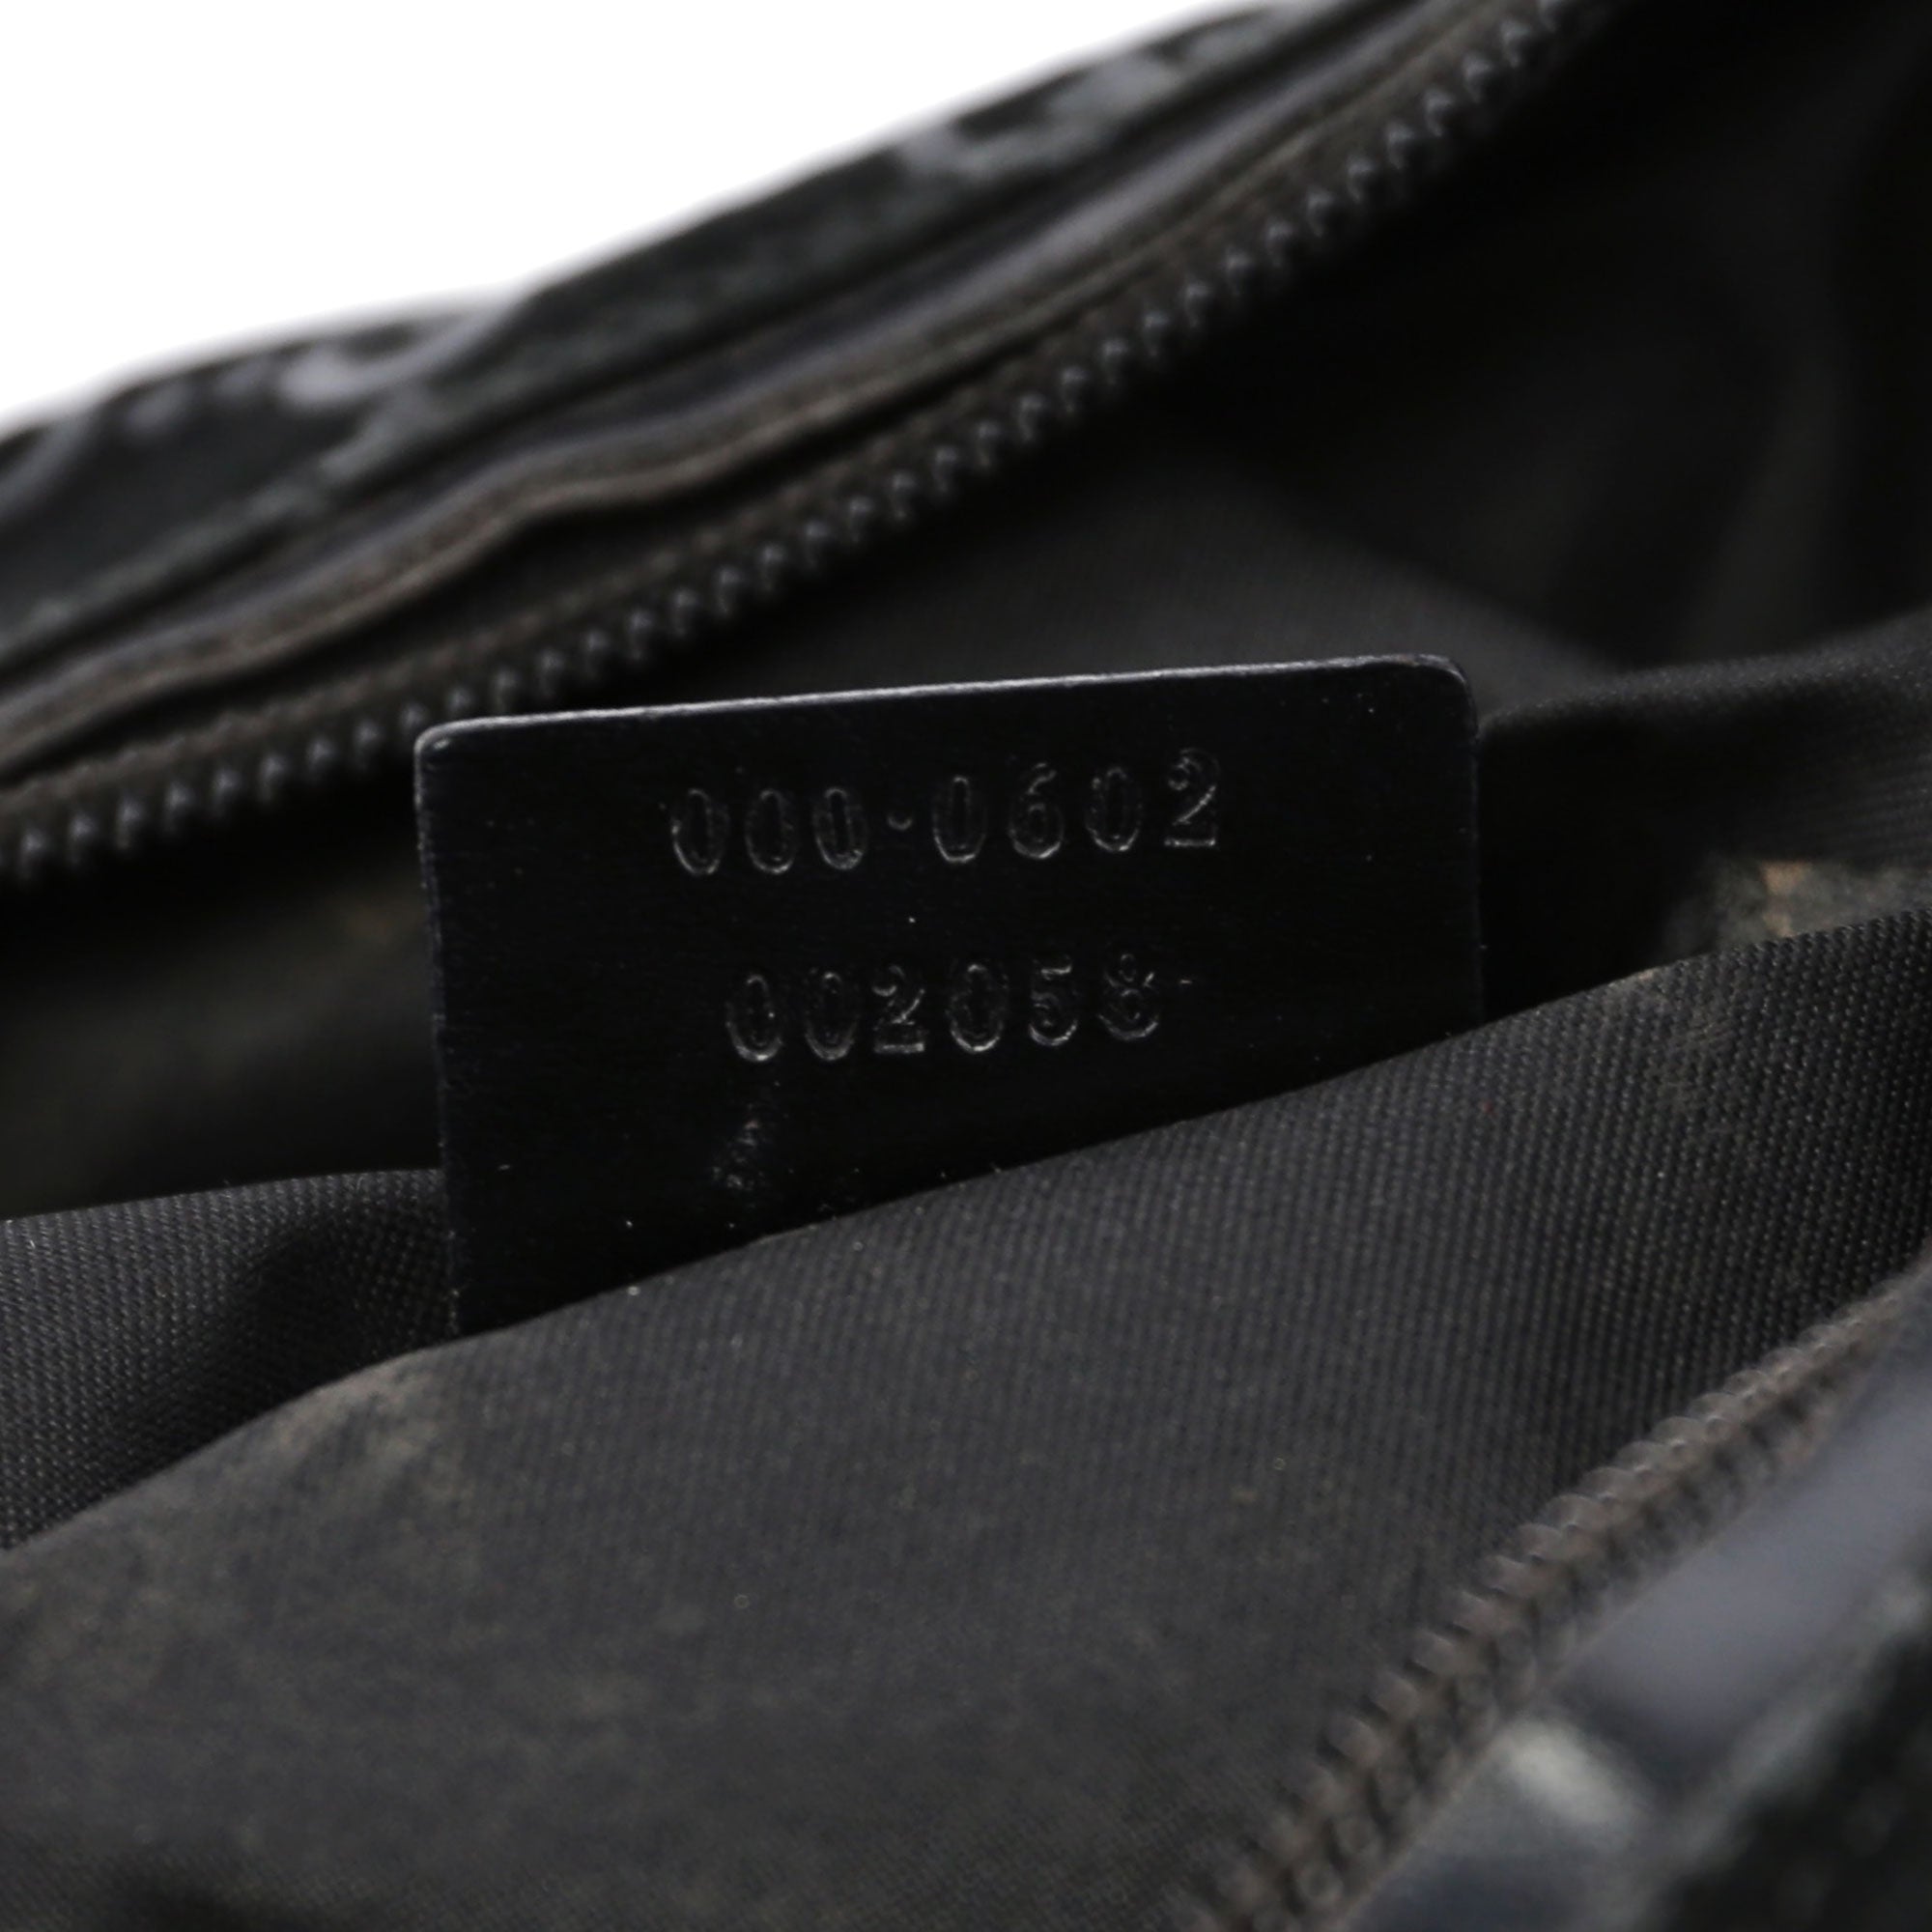 Gucci Black Suede GG Shoulder Bag